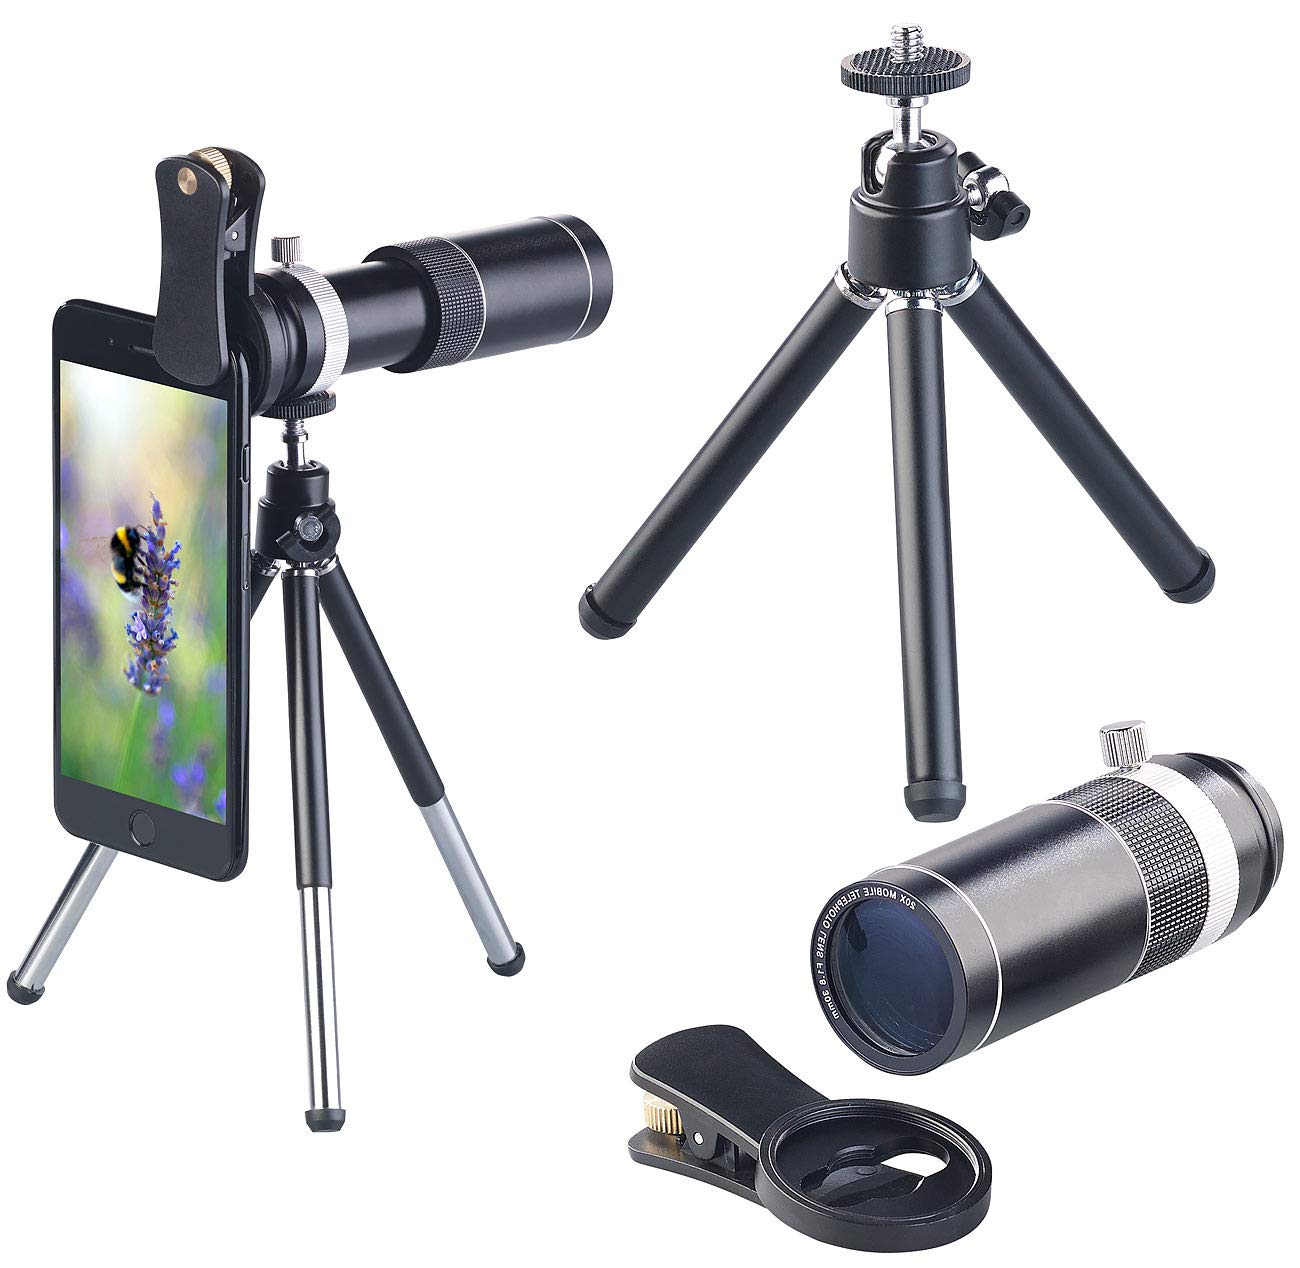 Somikon Vorsatzlinse: Vorsatz-Tele-Objektiv 20x für Smartphones, Aluminium-Gehäuse & Stativ (Teleskop Smartphone Objektiv, Vergrößerungs-Teleobjektiv, iPad Halterung)